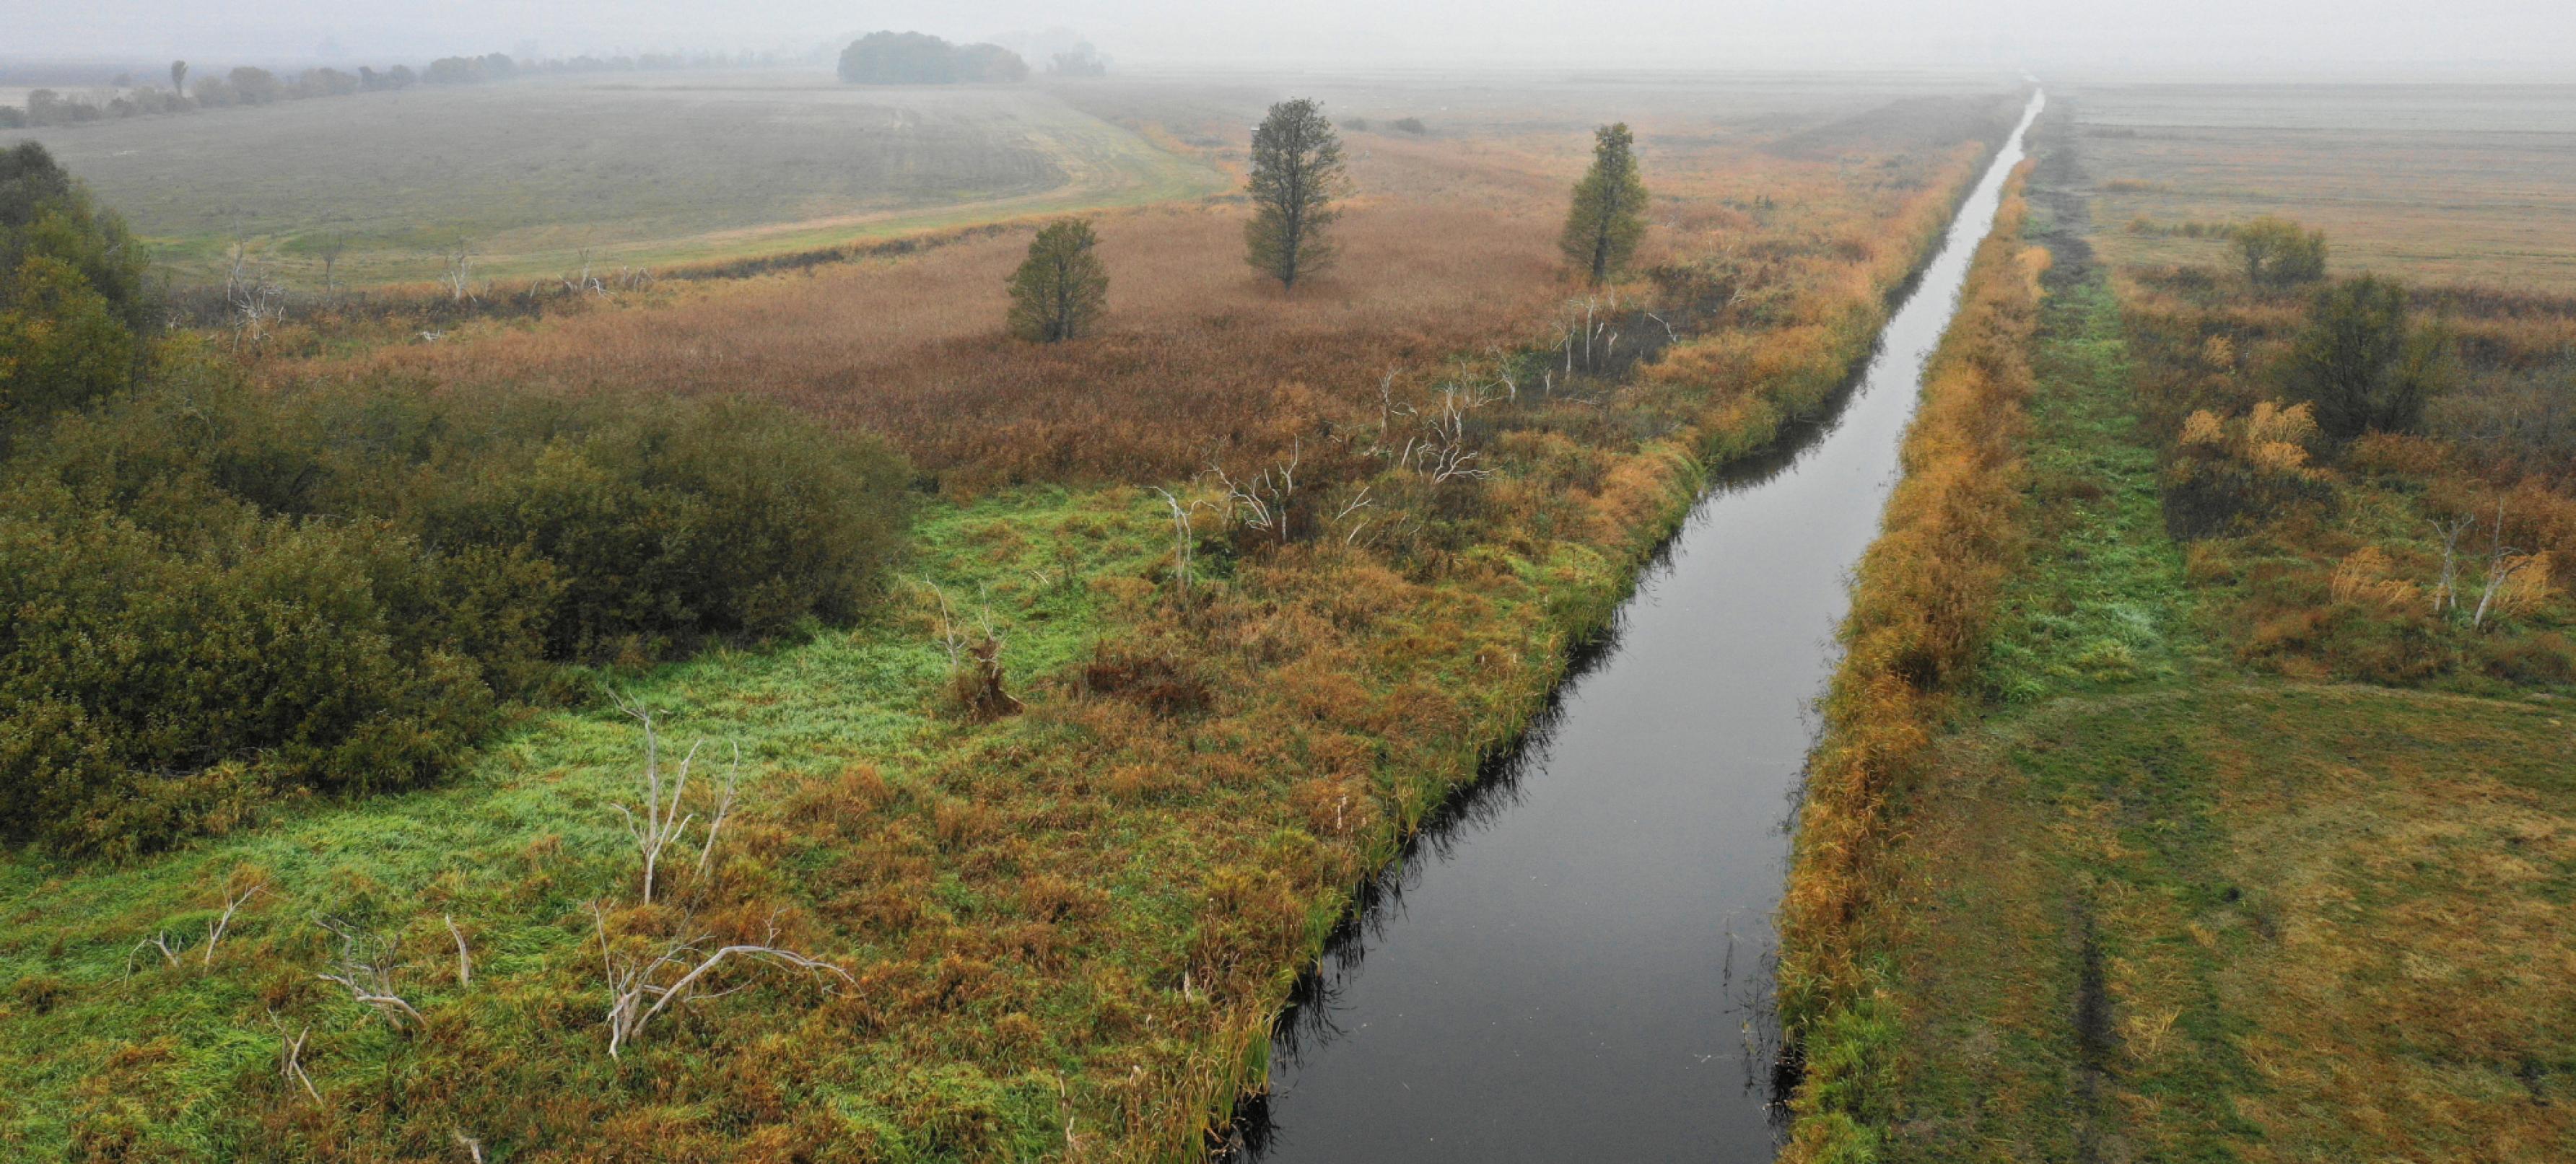 Ein Luftbild. Es zeigt einen Kanal im Havelländischen Luch in Brandenburg mit herbstlicher Färbung der umgebenden niedrigen Pflanzen